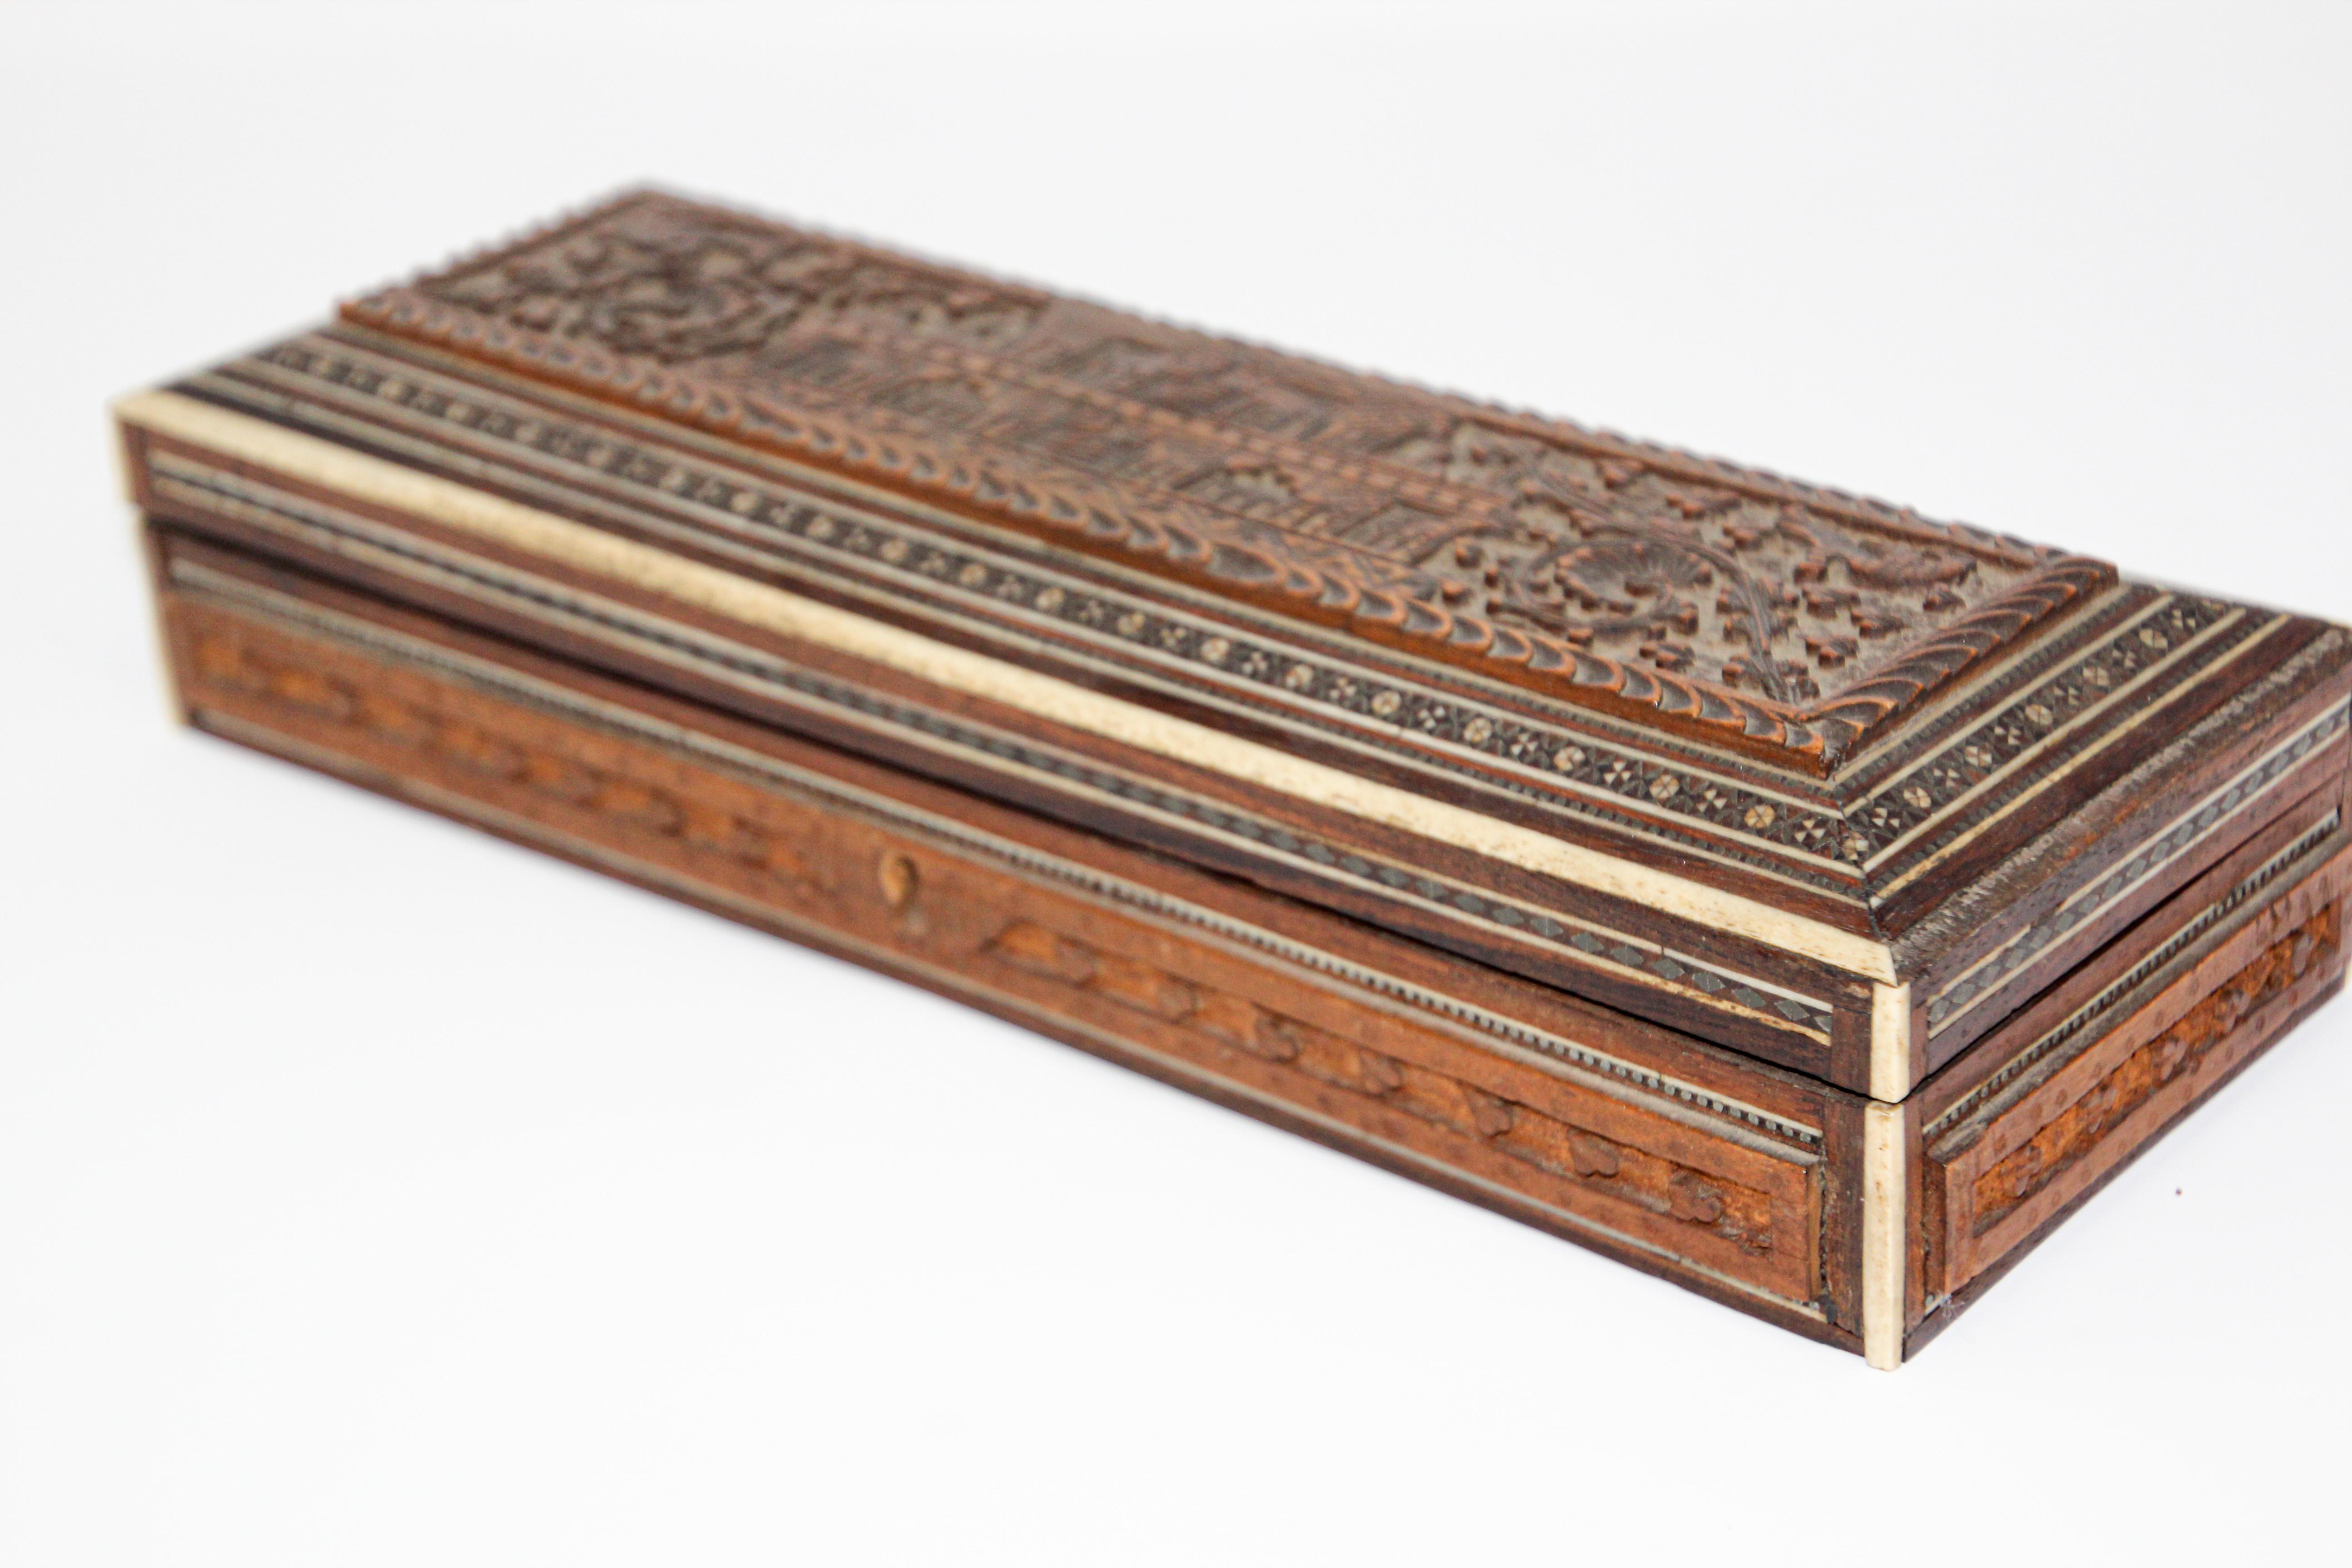 Belle boîte à bijoux antique anglo-indienne en bois sculpté à la main et incrusté.
Un joli Pen Box Mughal Anglo-Indien
19ème siècle
La boîte est ornée d'un motif architectural de palais indien moghol sculpté de manière complexe.
Mosaïque de